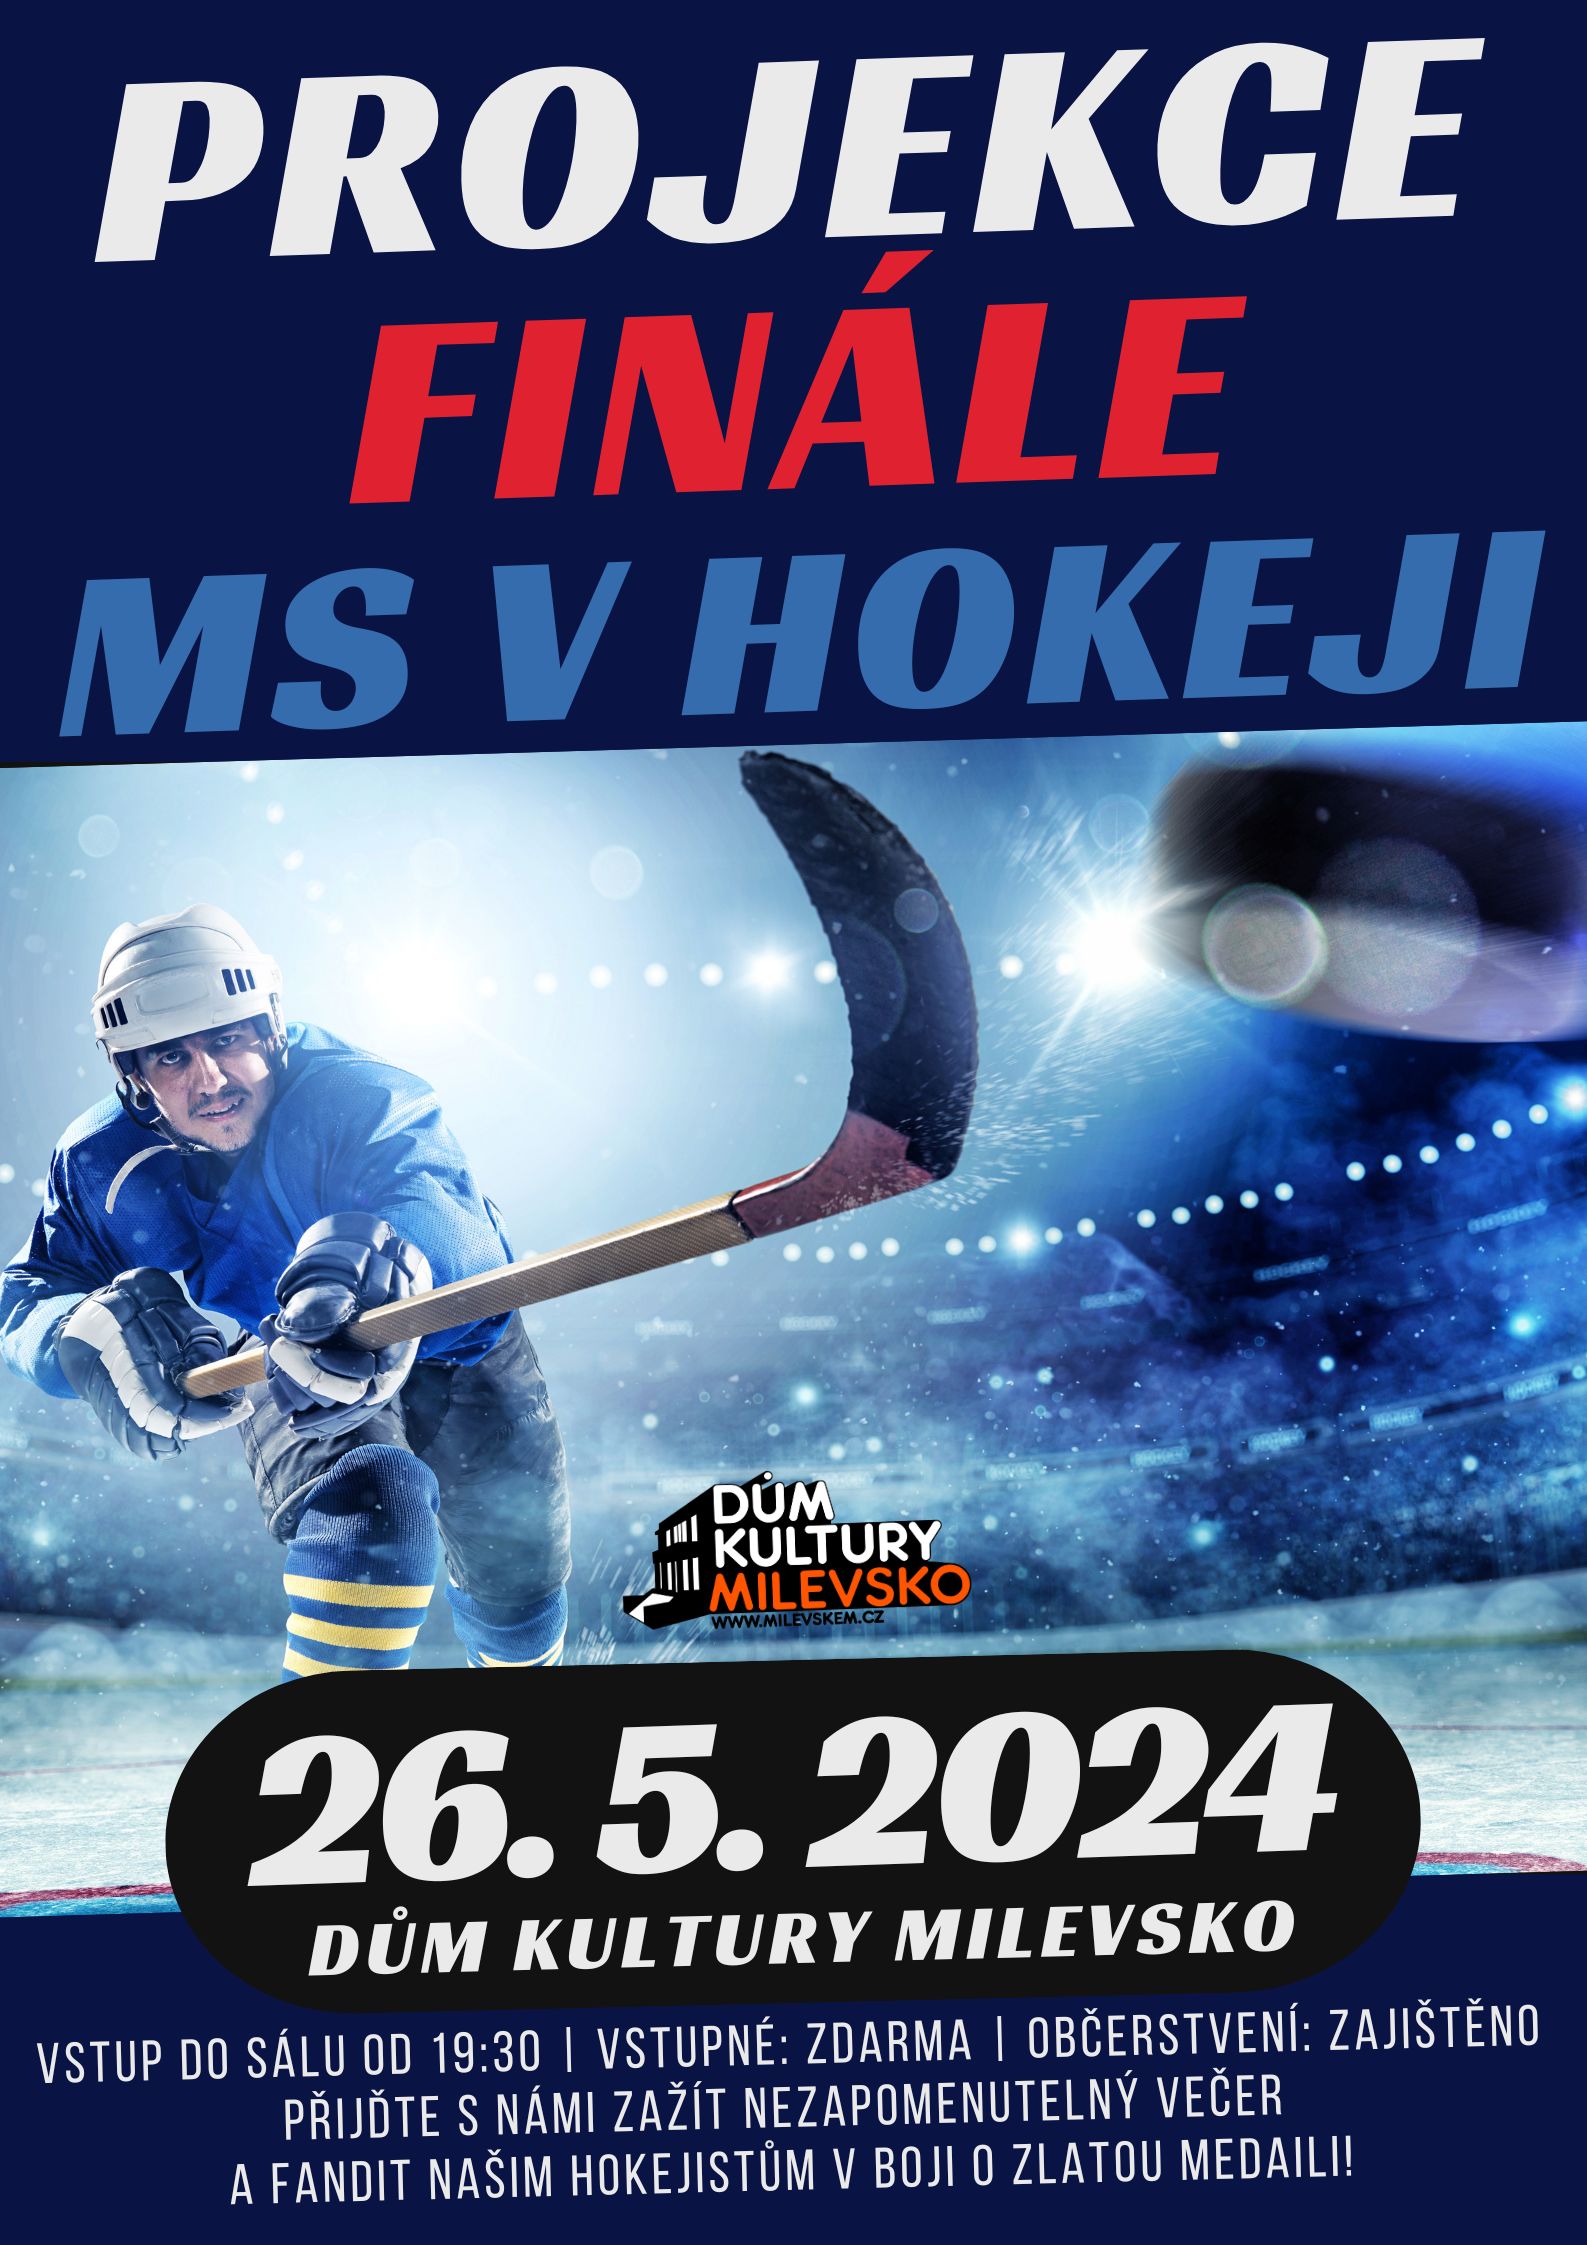 Plakát MS v hokeji -  projekce finálového zápasu